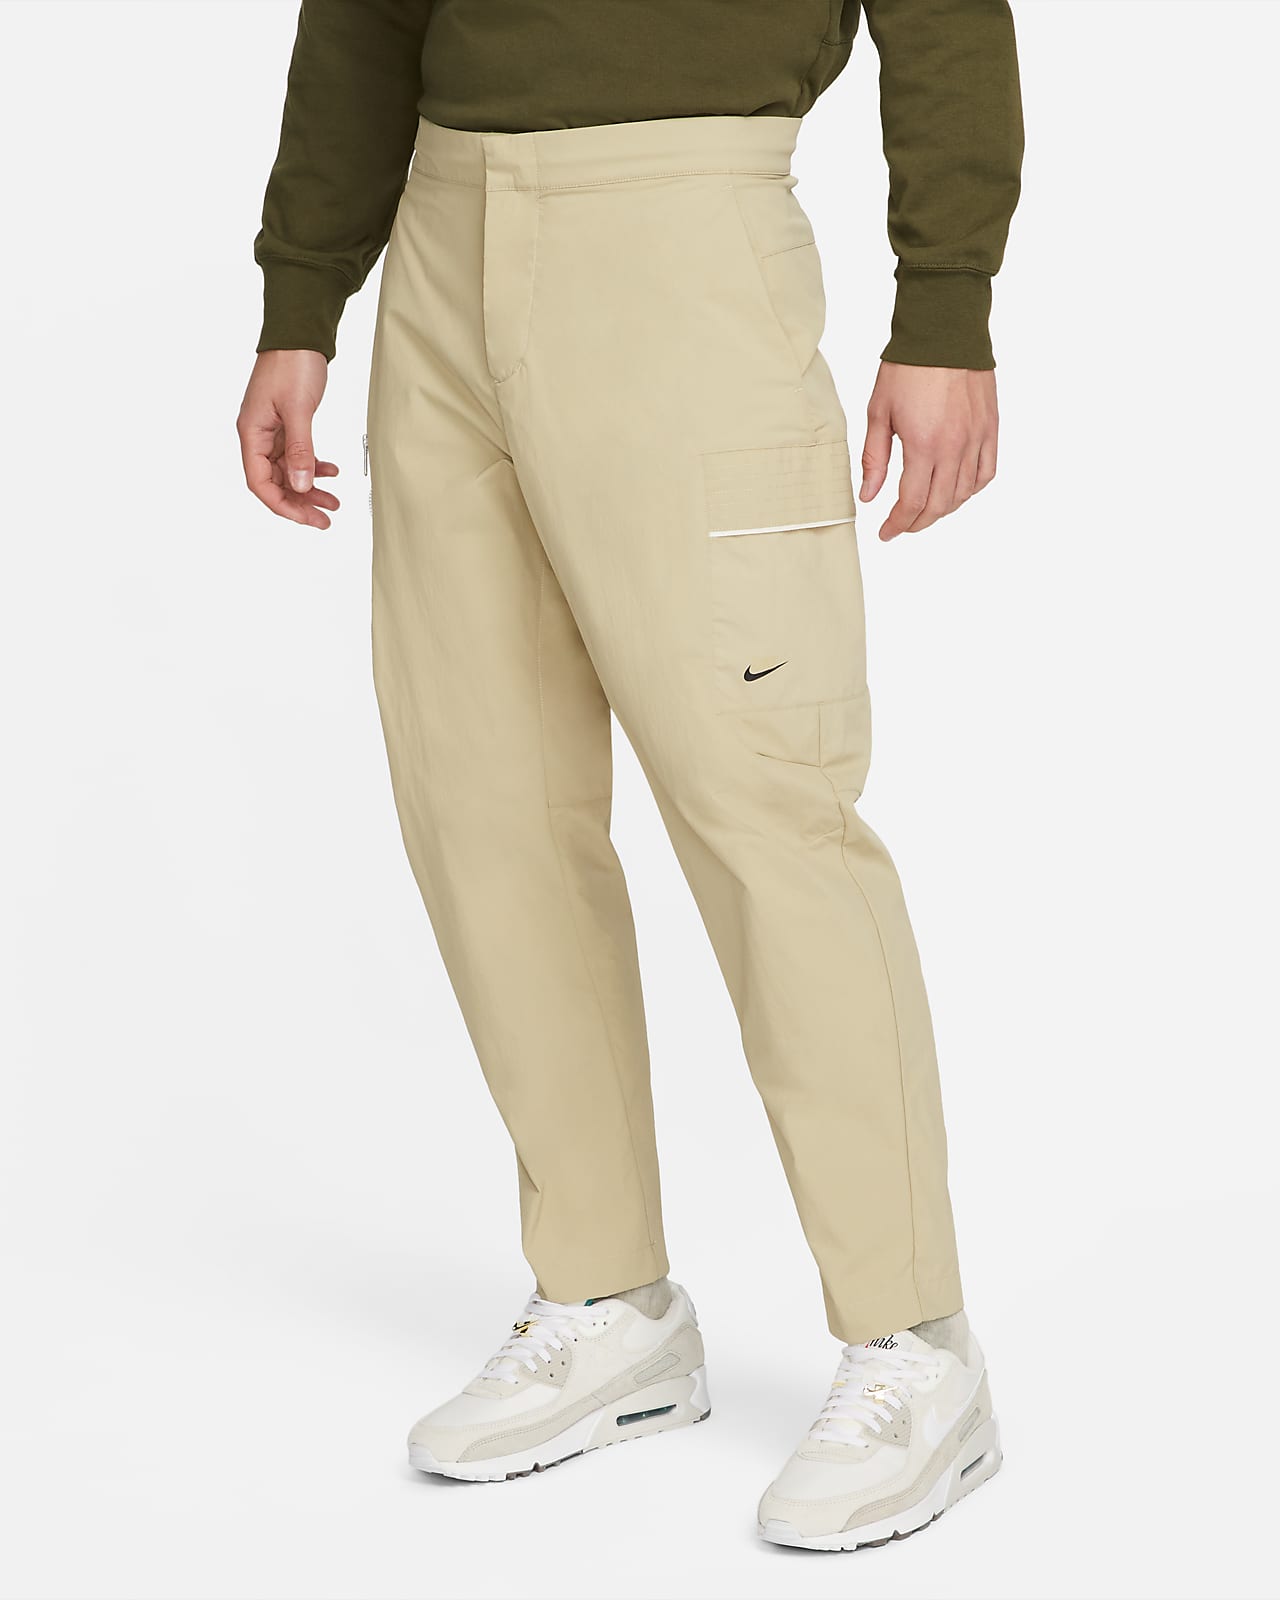 Pantalon coton naturel beige - Pantalons homme coton naturel - HOMME -  Boutique Pérou